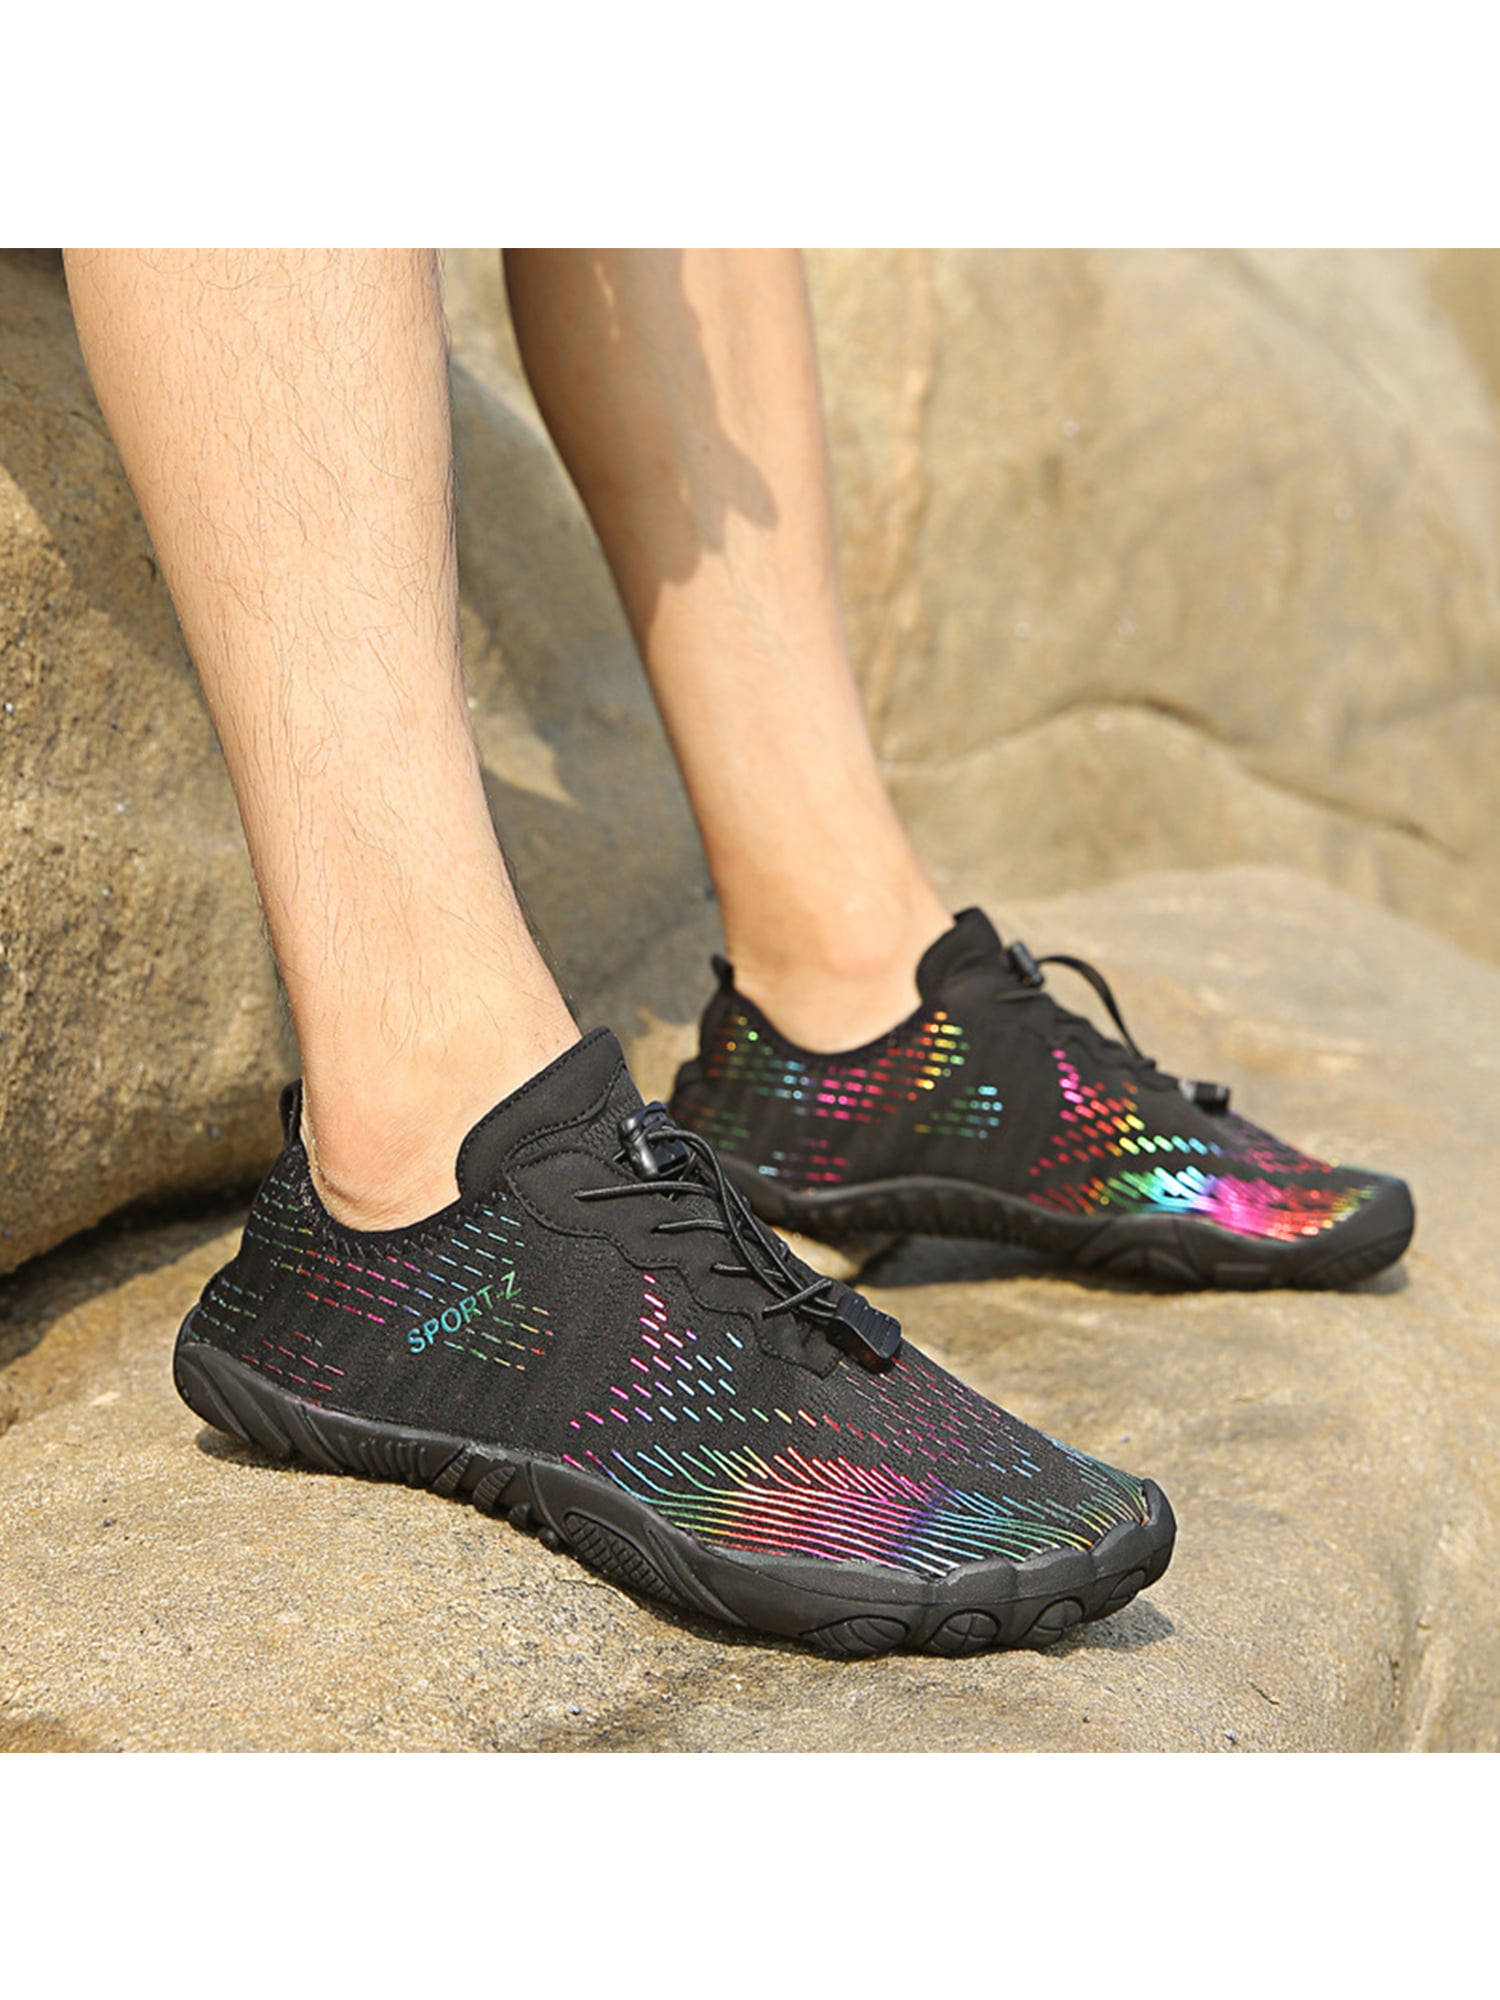 SAGUARO Mens Aqua Water Shoes Yogo Socks Diving Wetsuit Non-slip Swim Beach shoe 